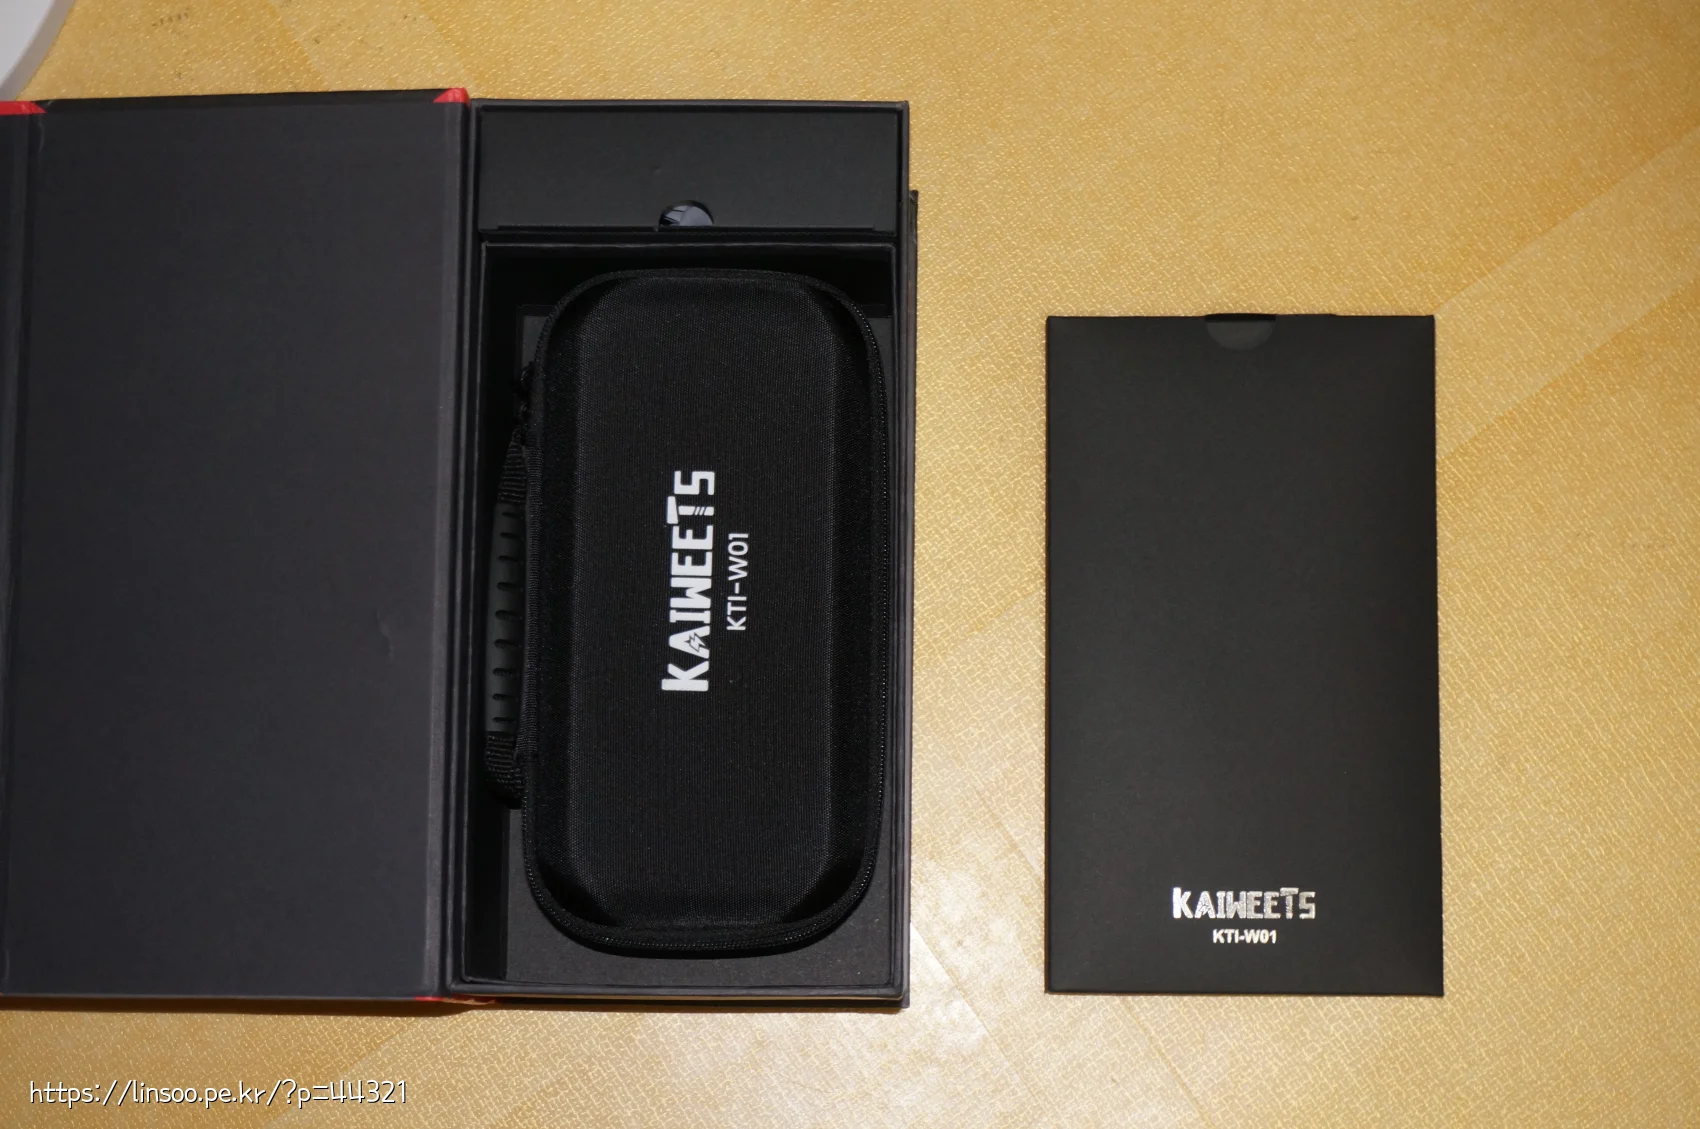 KAIWEETS KTI-W01 열화상 카메라 내부 구성품